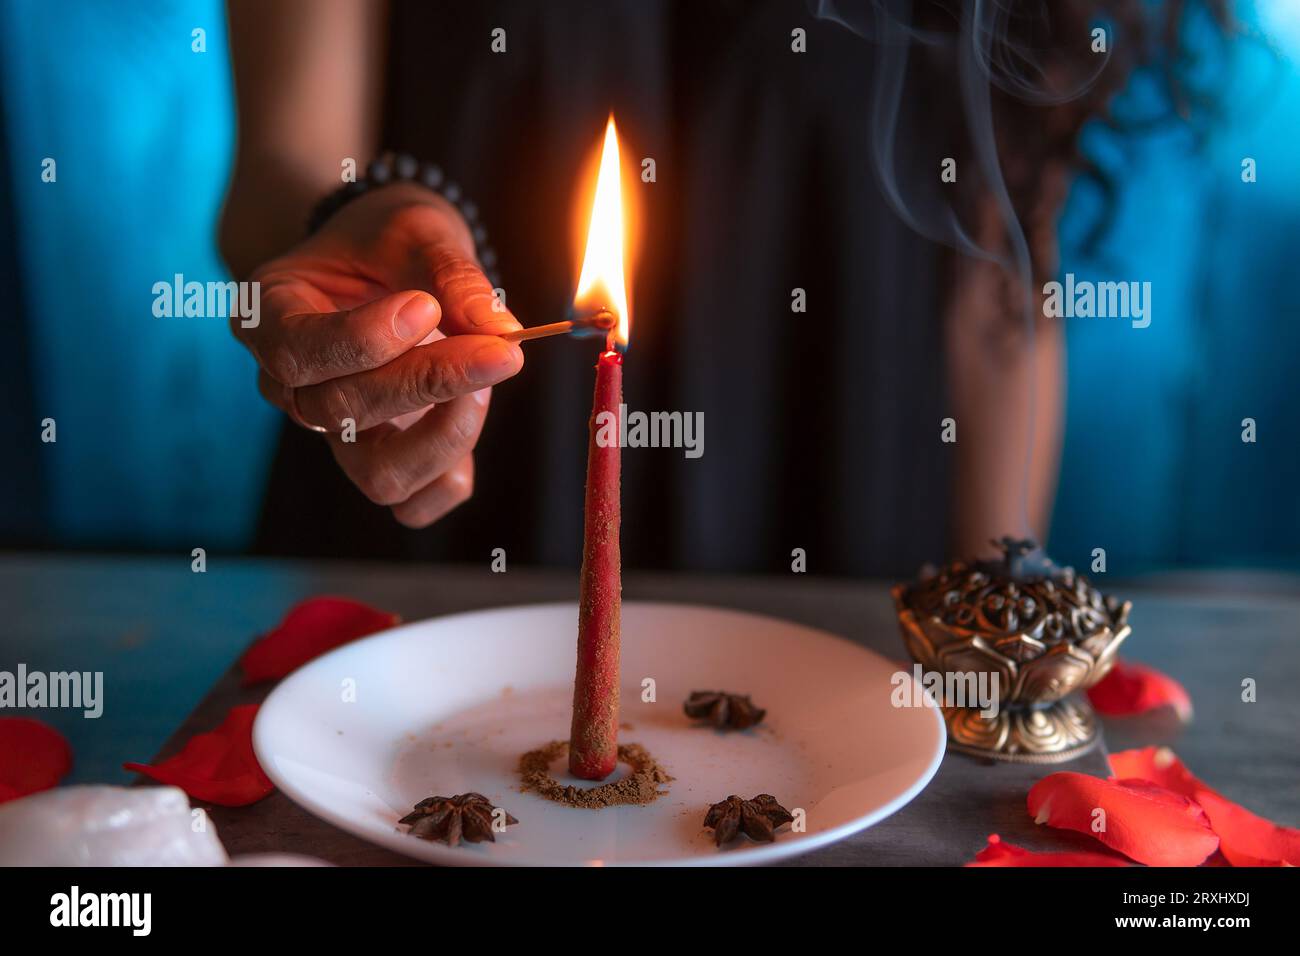 Encendiendo una vela roja, bruja en la víspera de todos los santos realizando un ritual, Halloween, creencias espirituales, magia blanca Foto de stock